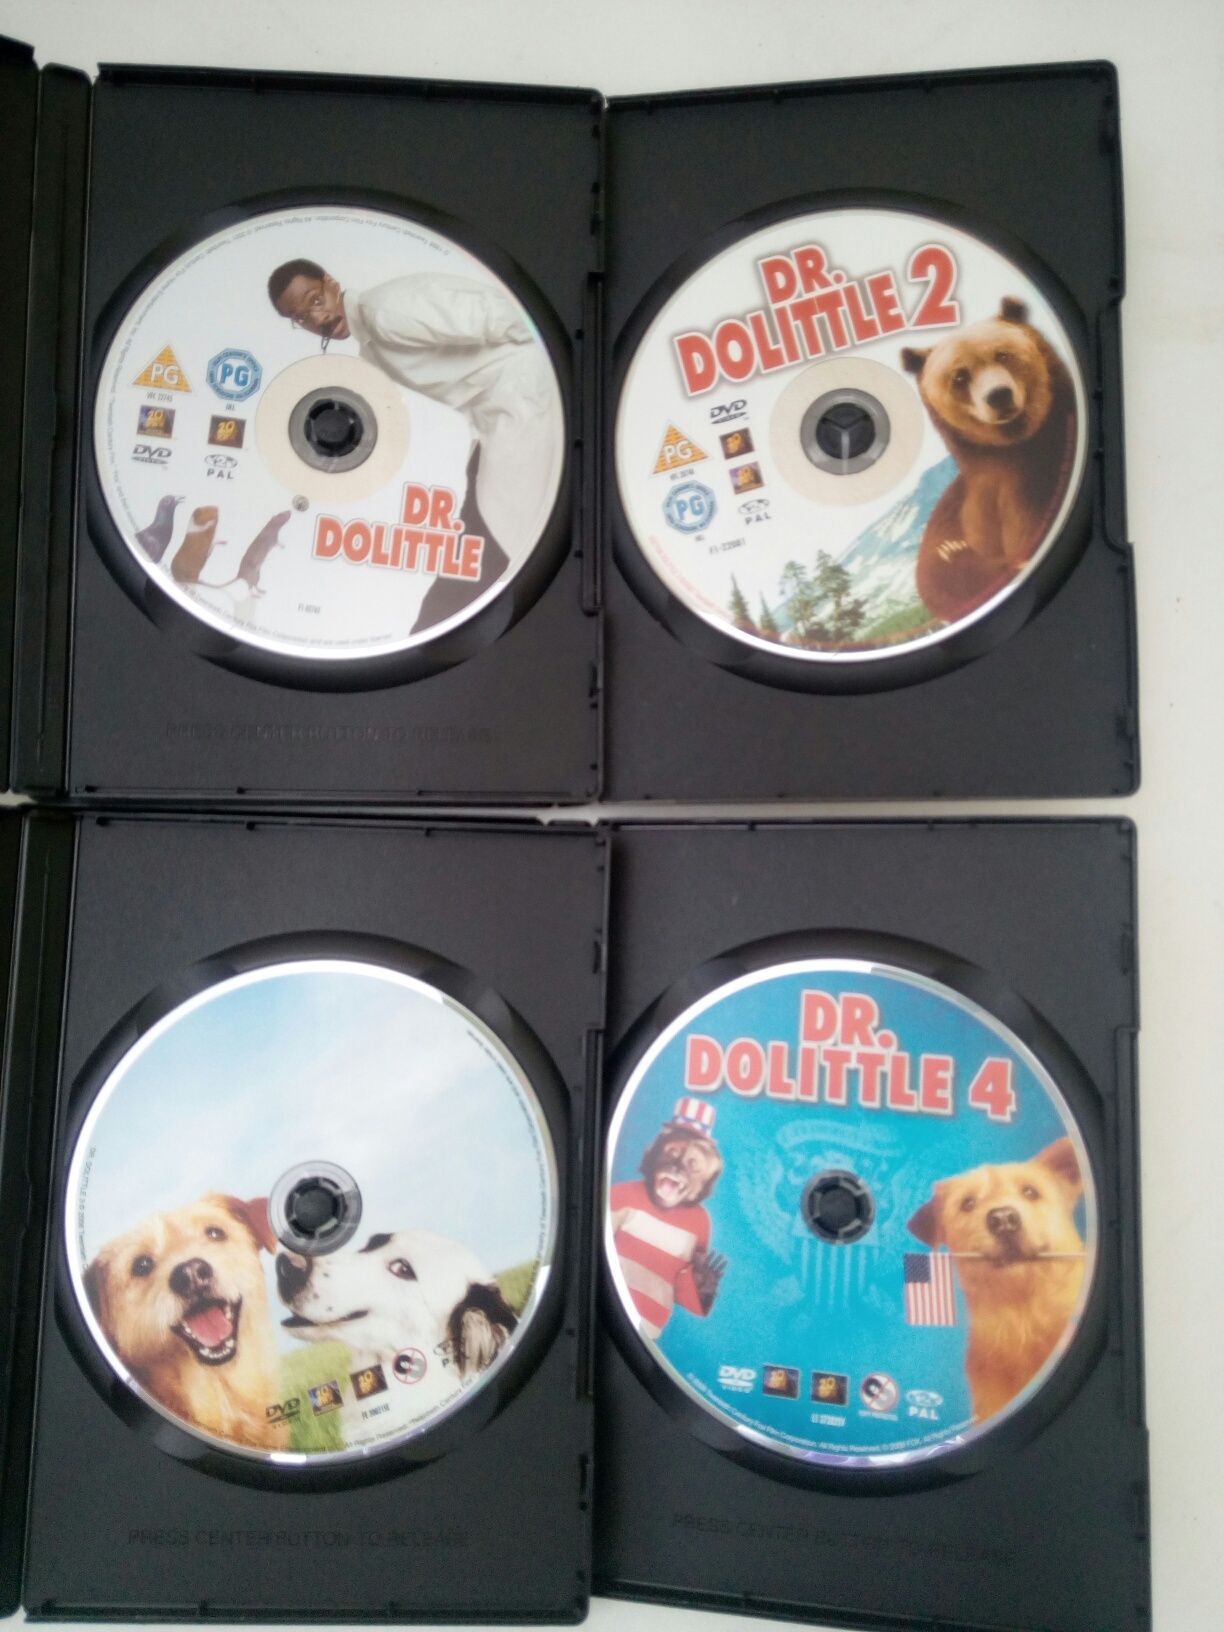 DVD: Dr. Dolittle 1,2,3,4